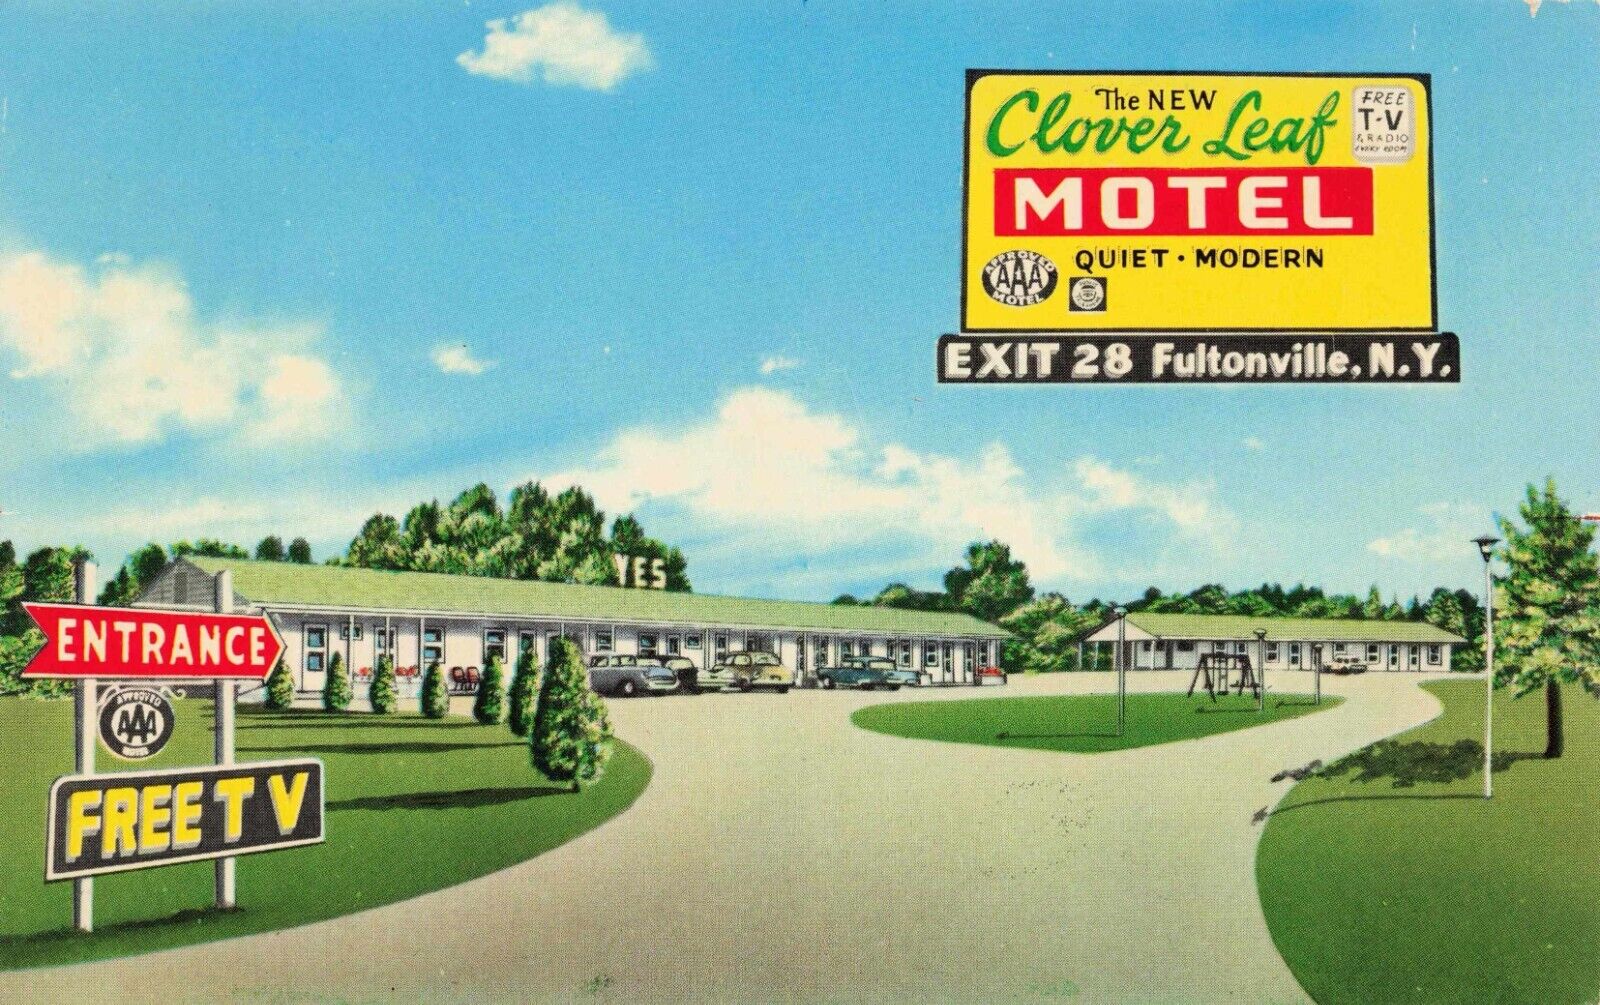 Clover Leaf Motel Roadside Inn Fultonville, New York Vintage PC